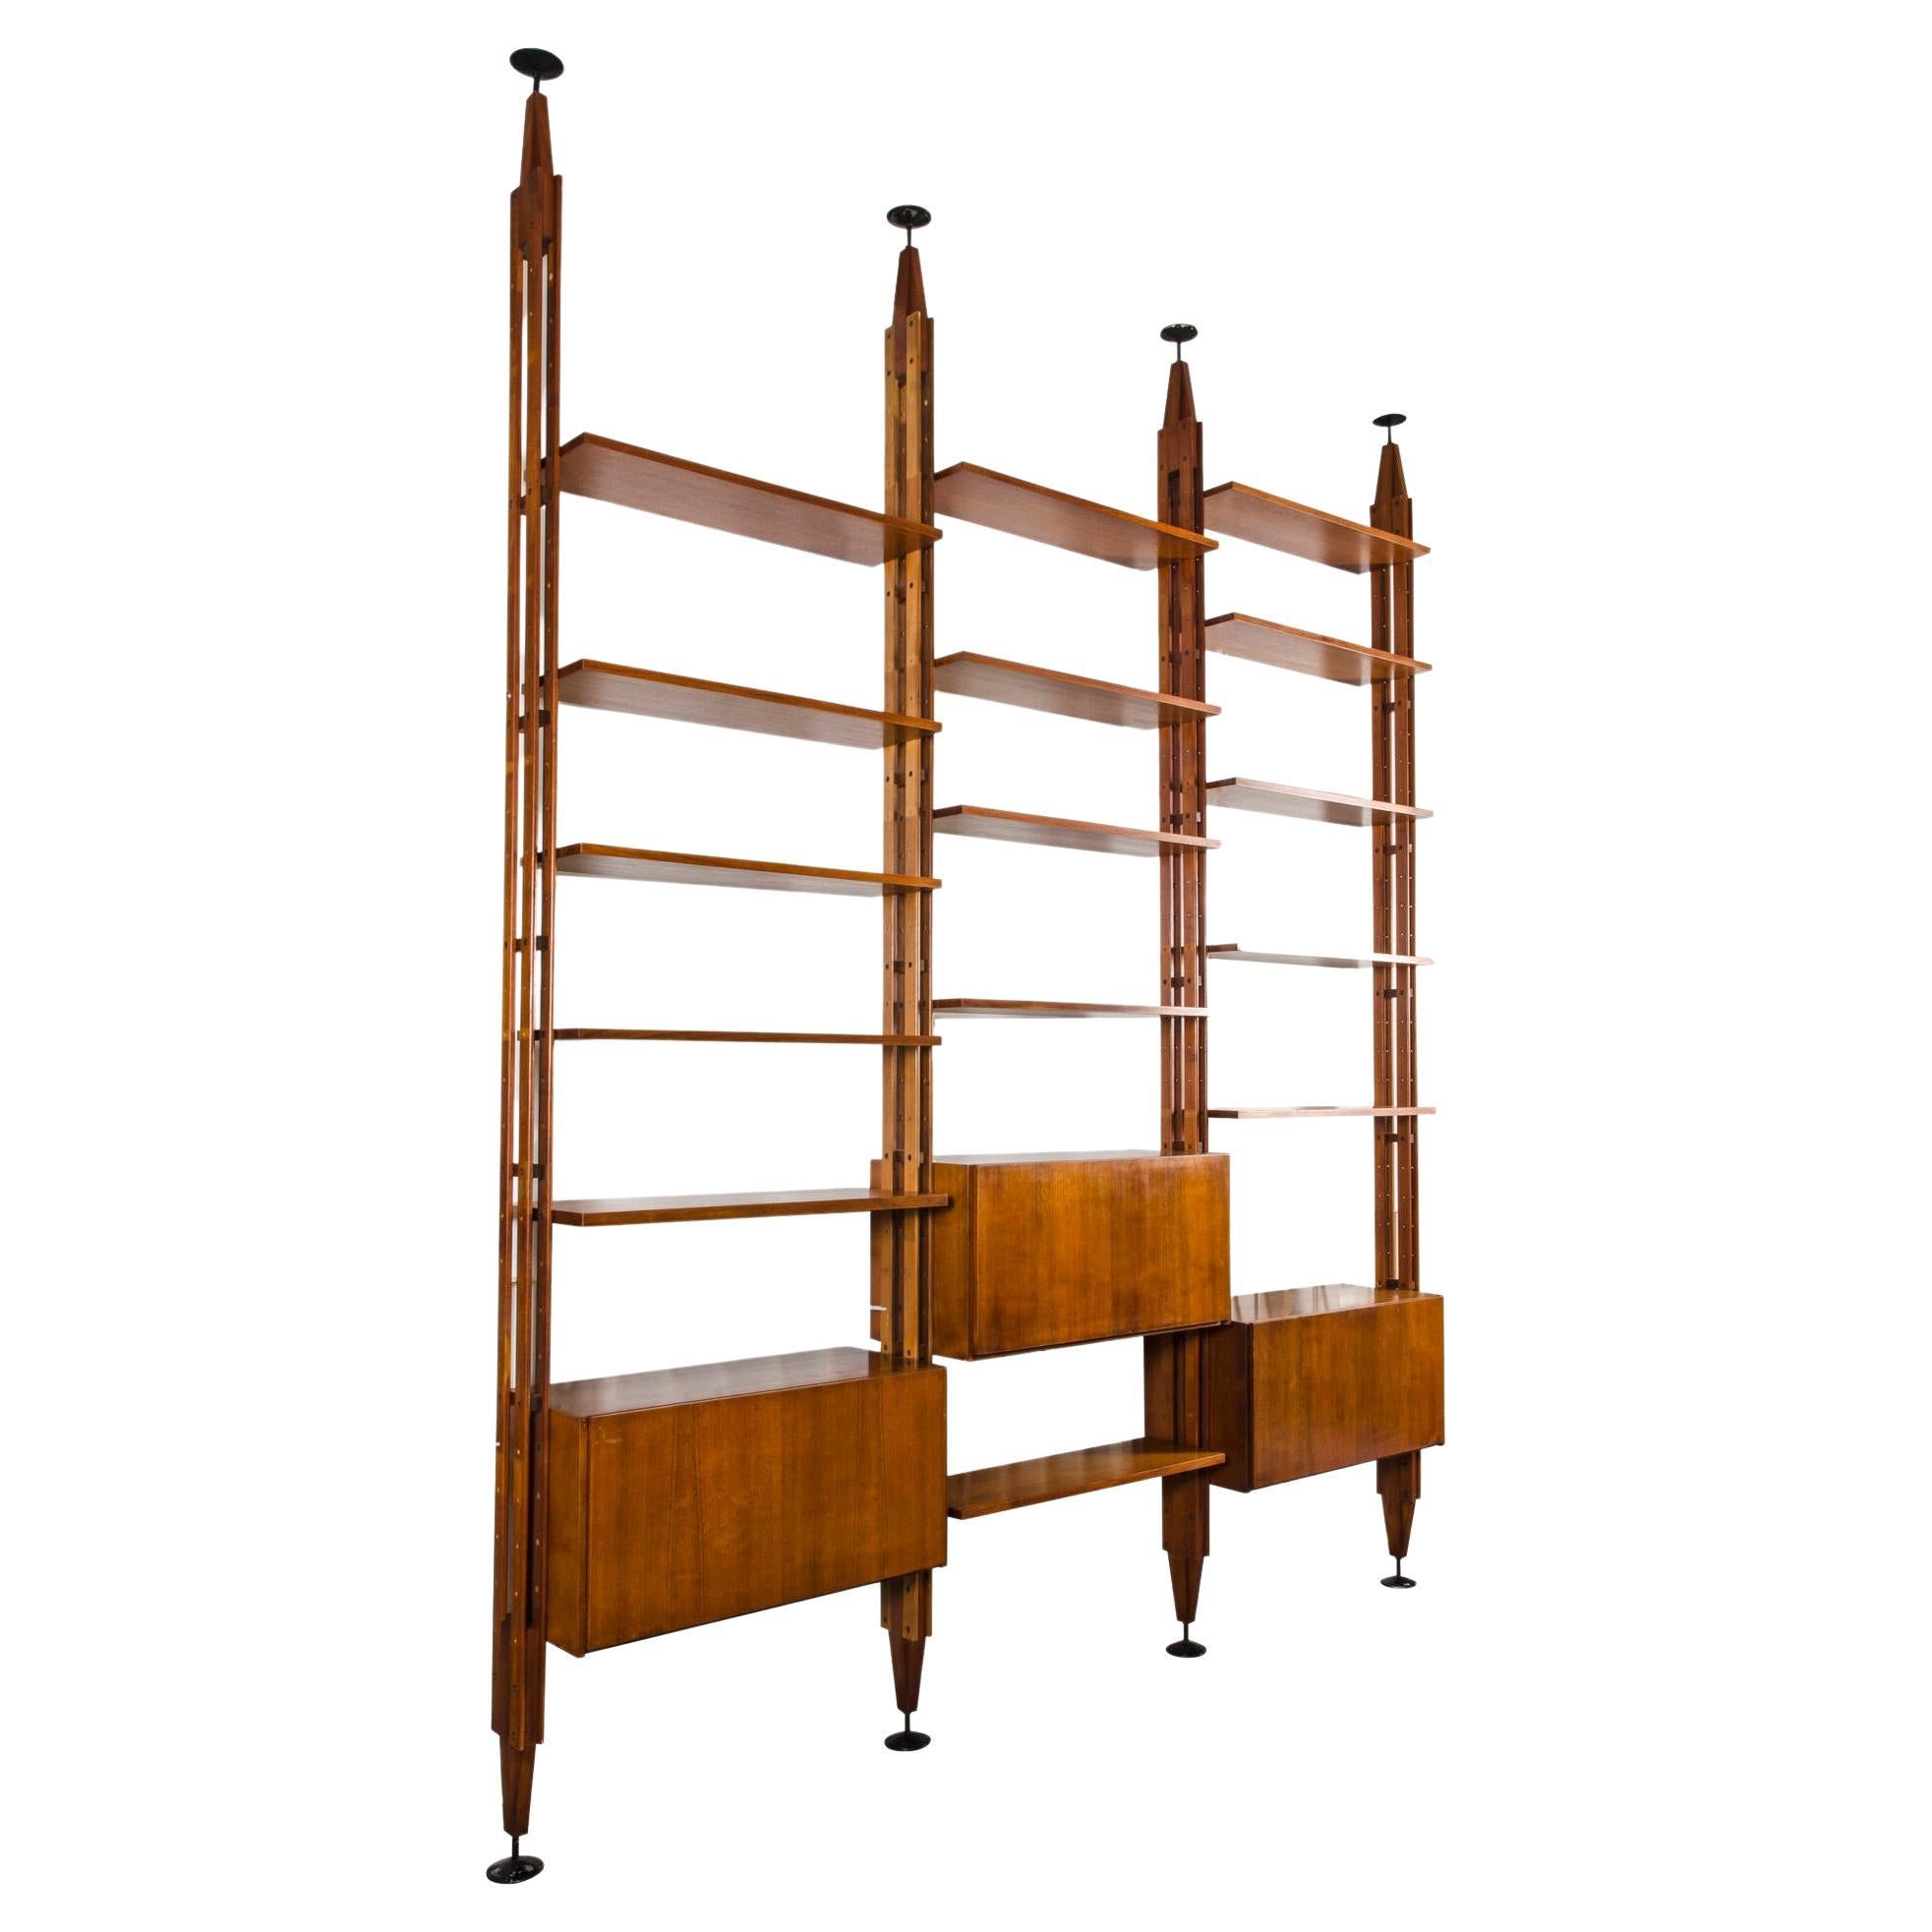 LB7, “Infinito” Bookcase by Franco Albini, Poggi 